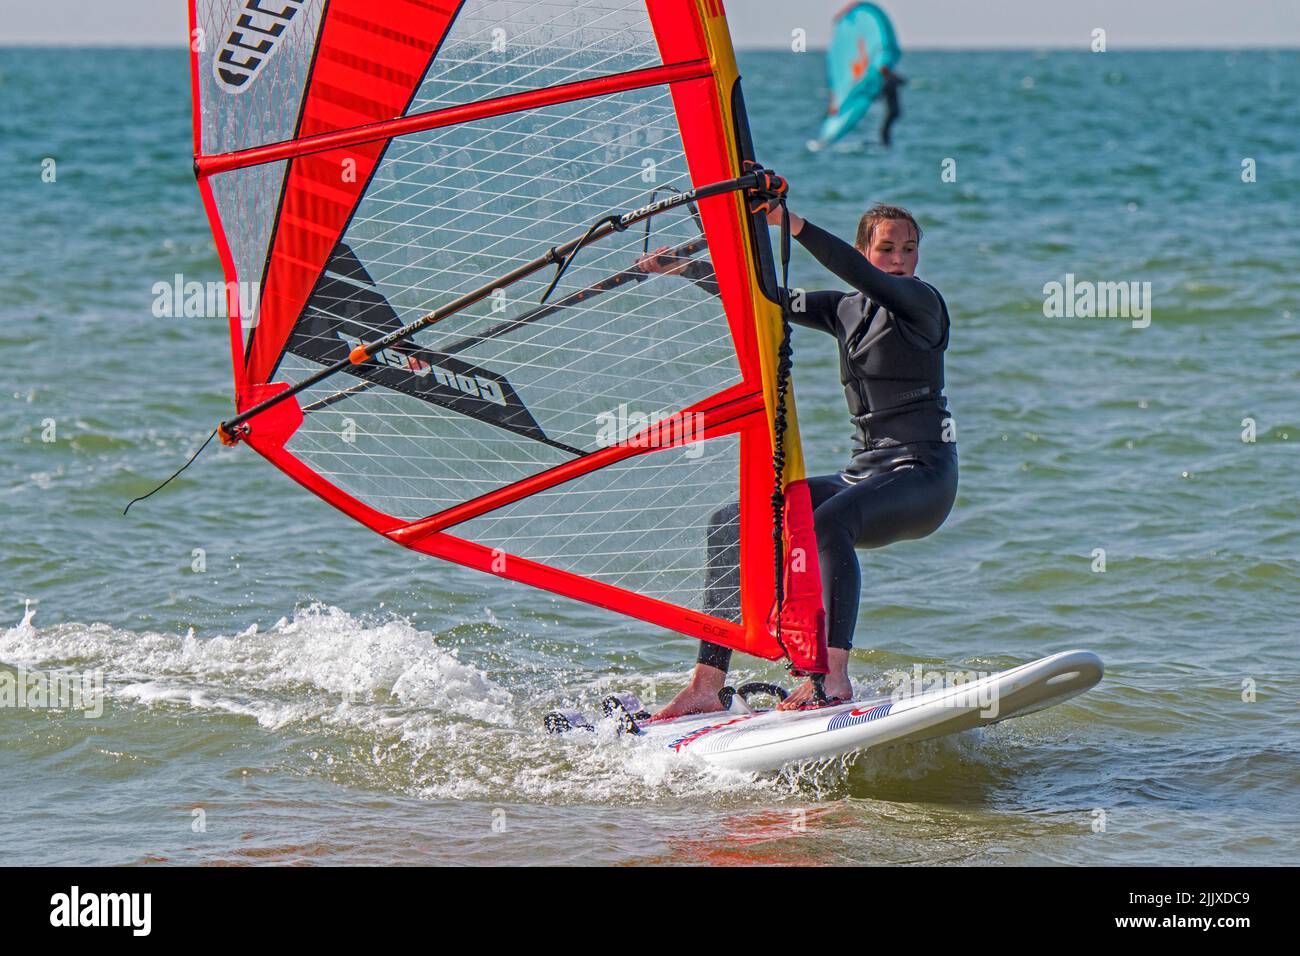 Niña / mujer windsurfista de recreo en traje negro practicando windsurf clásico en el mar Foto de stock